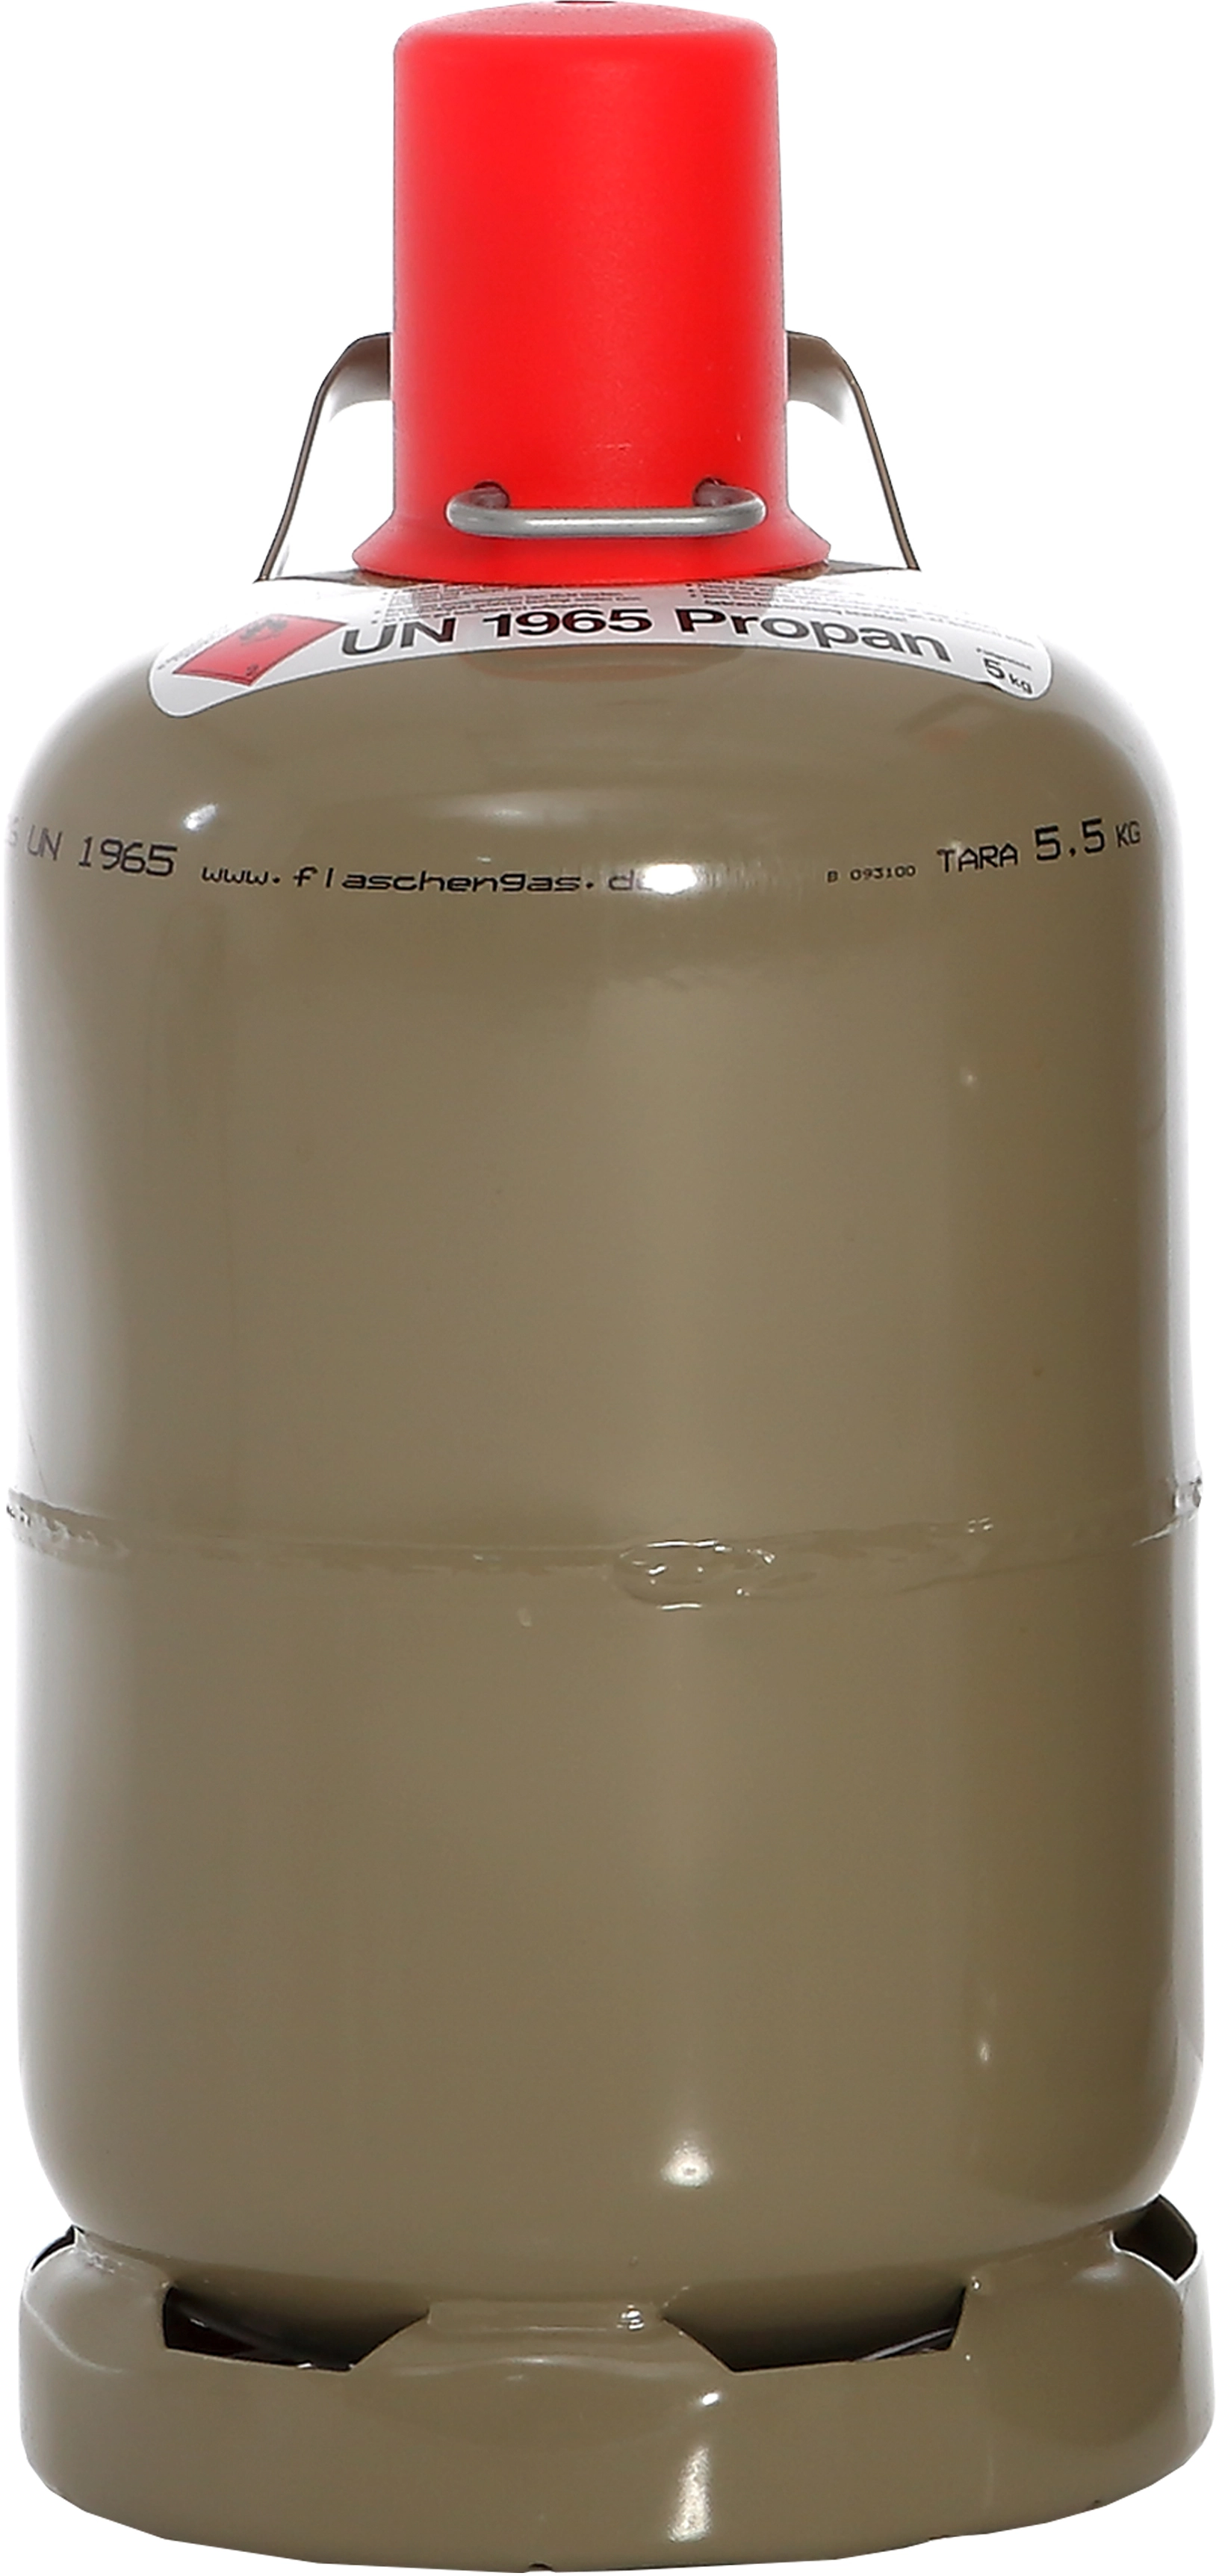 Westfalengas Propan Füllung 5 kg Nutzungsflasche (nur Füllung